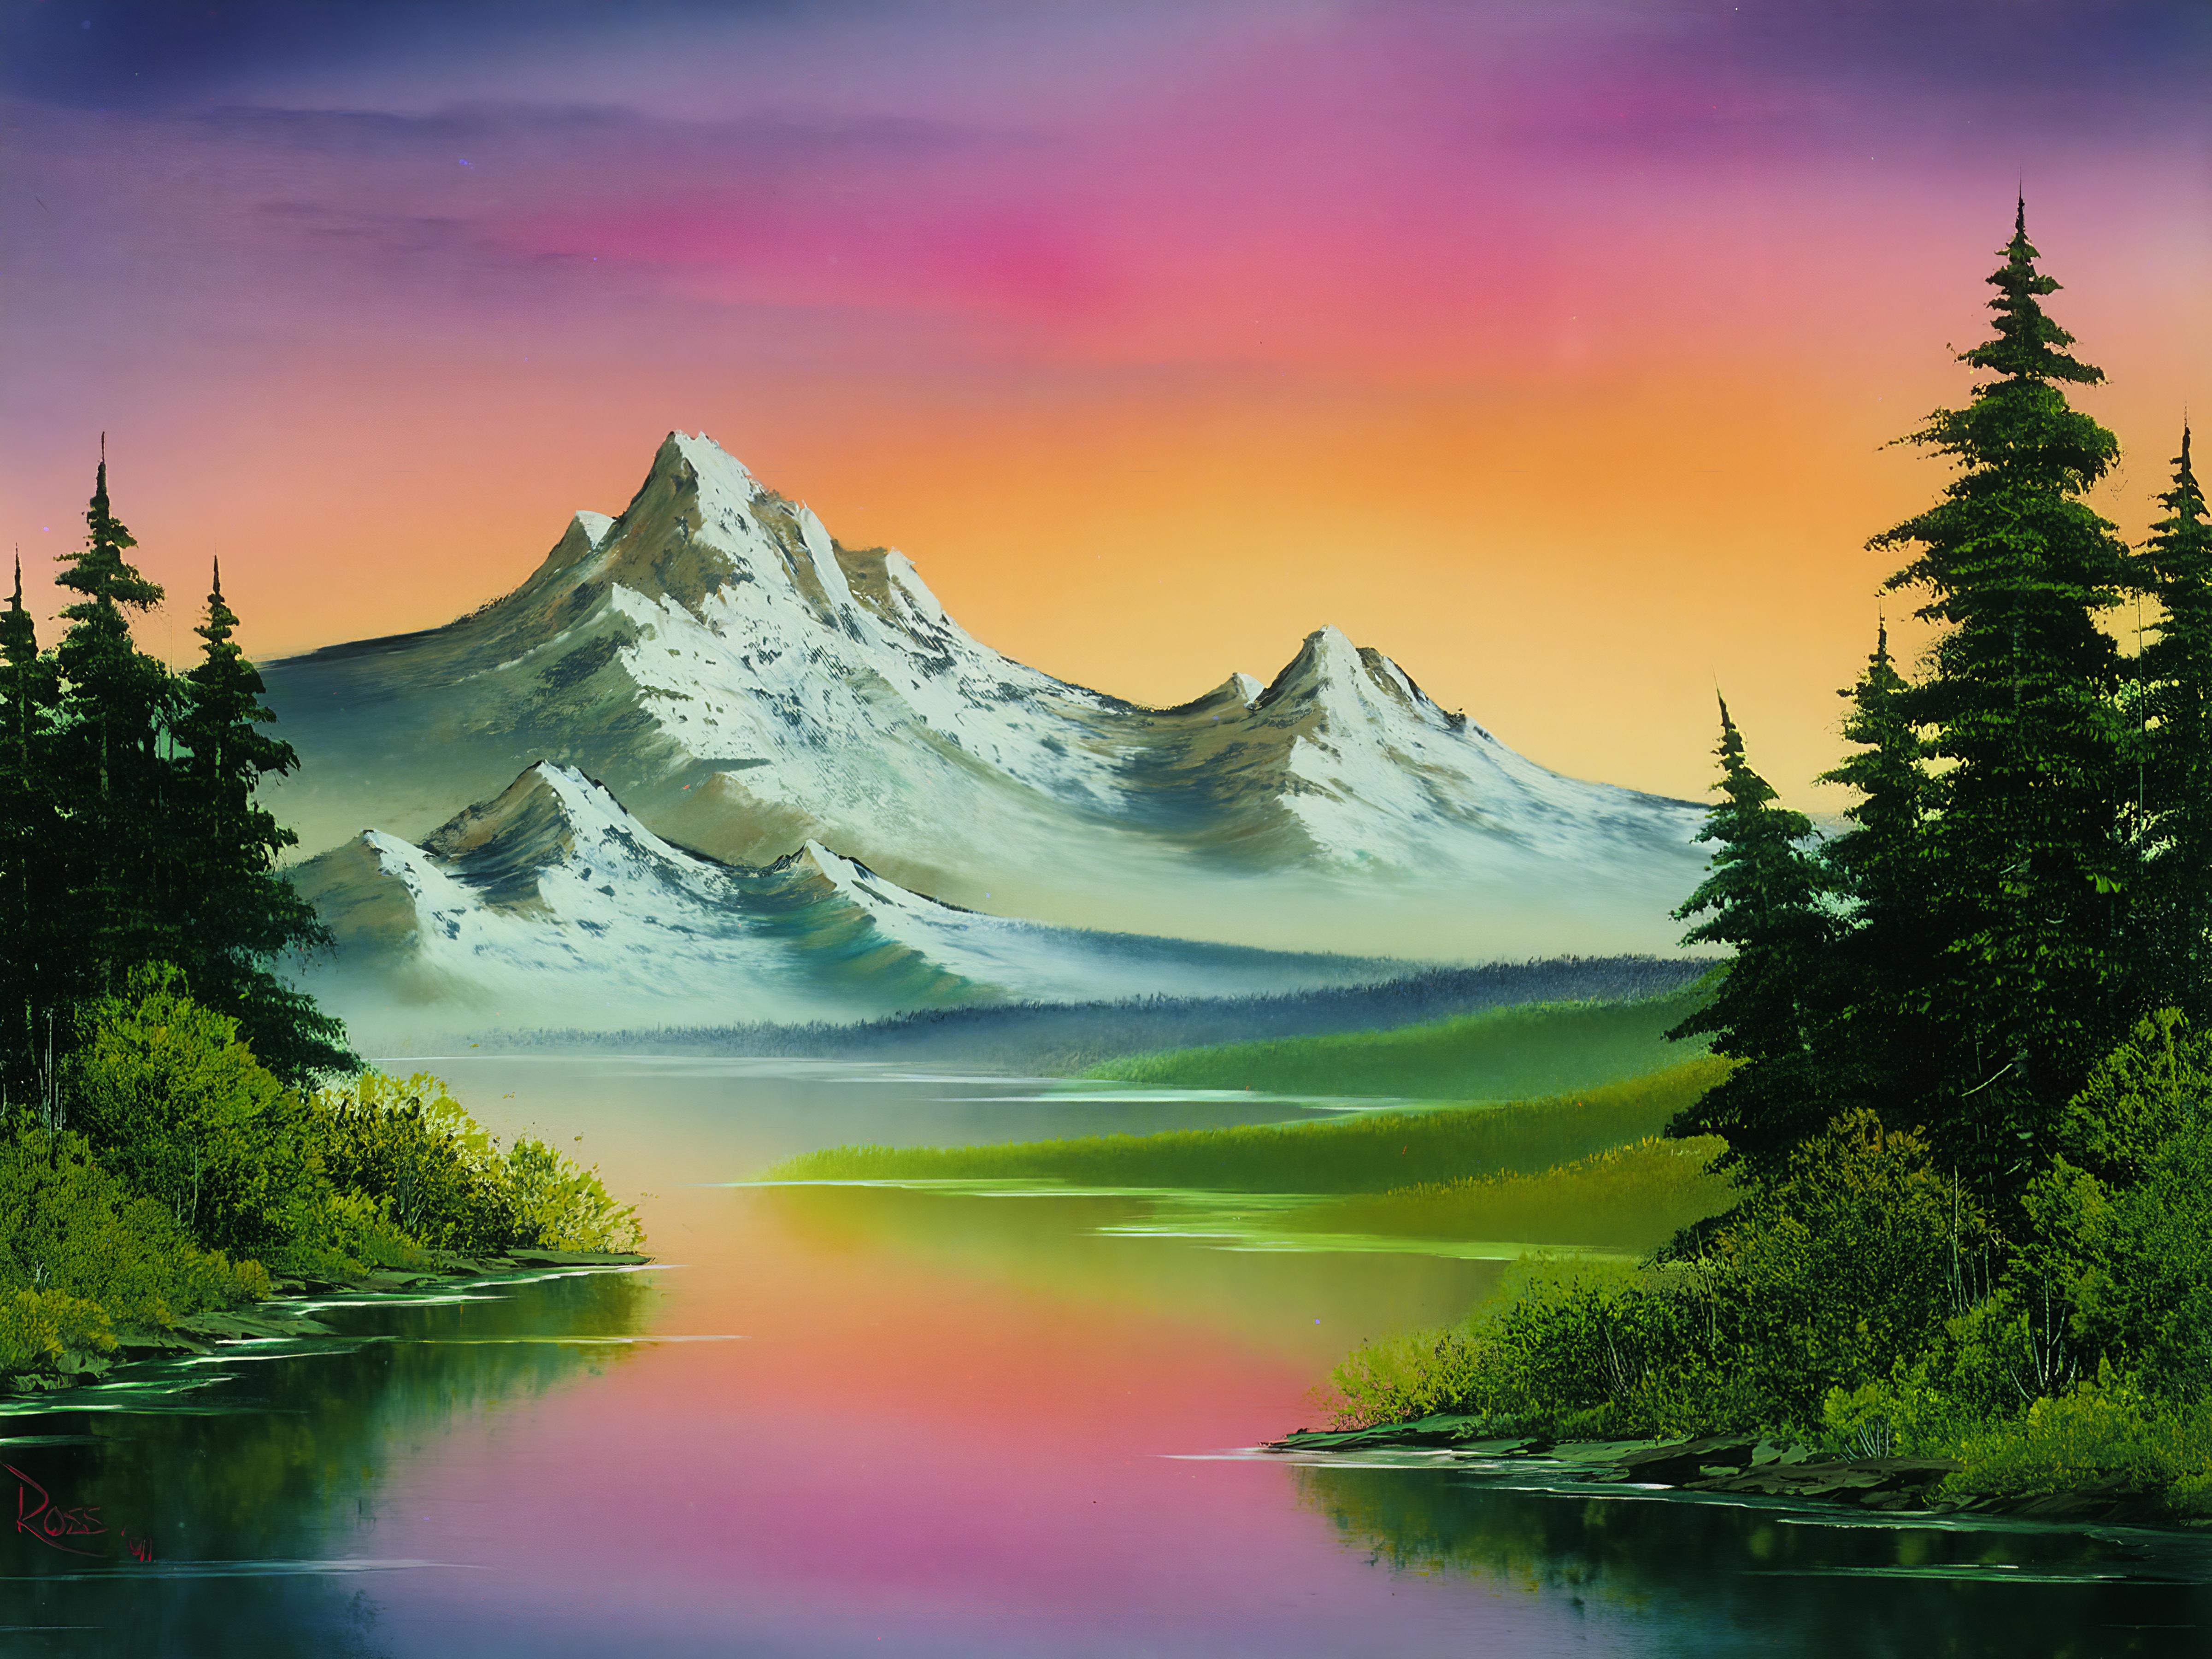 Пейзаж видео. Боб Росс картины горы. Горный пейзаж Боб Росс. Картины горы акрилом Боба Росса. Художник пейзажист Боб Росс.